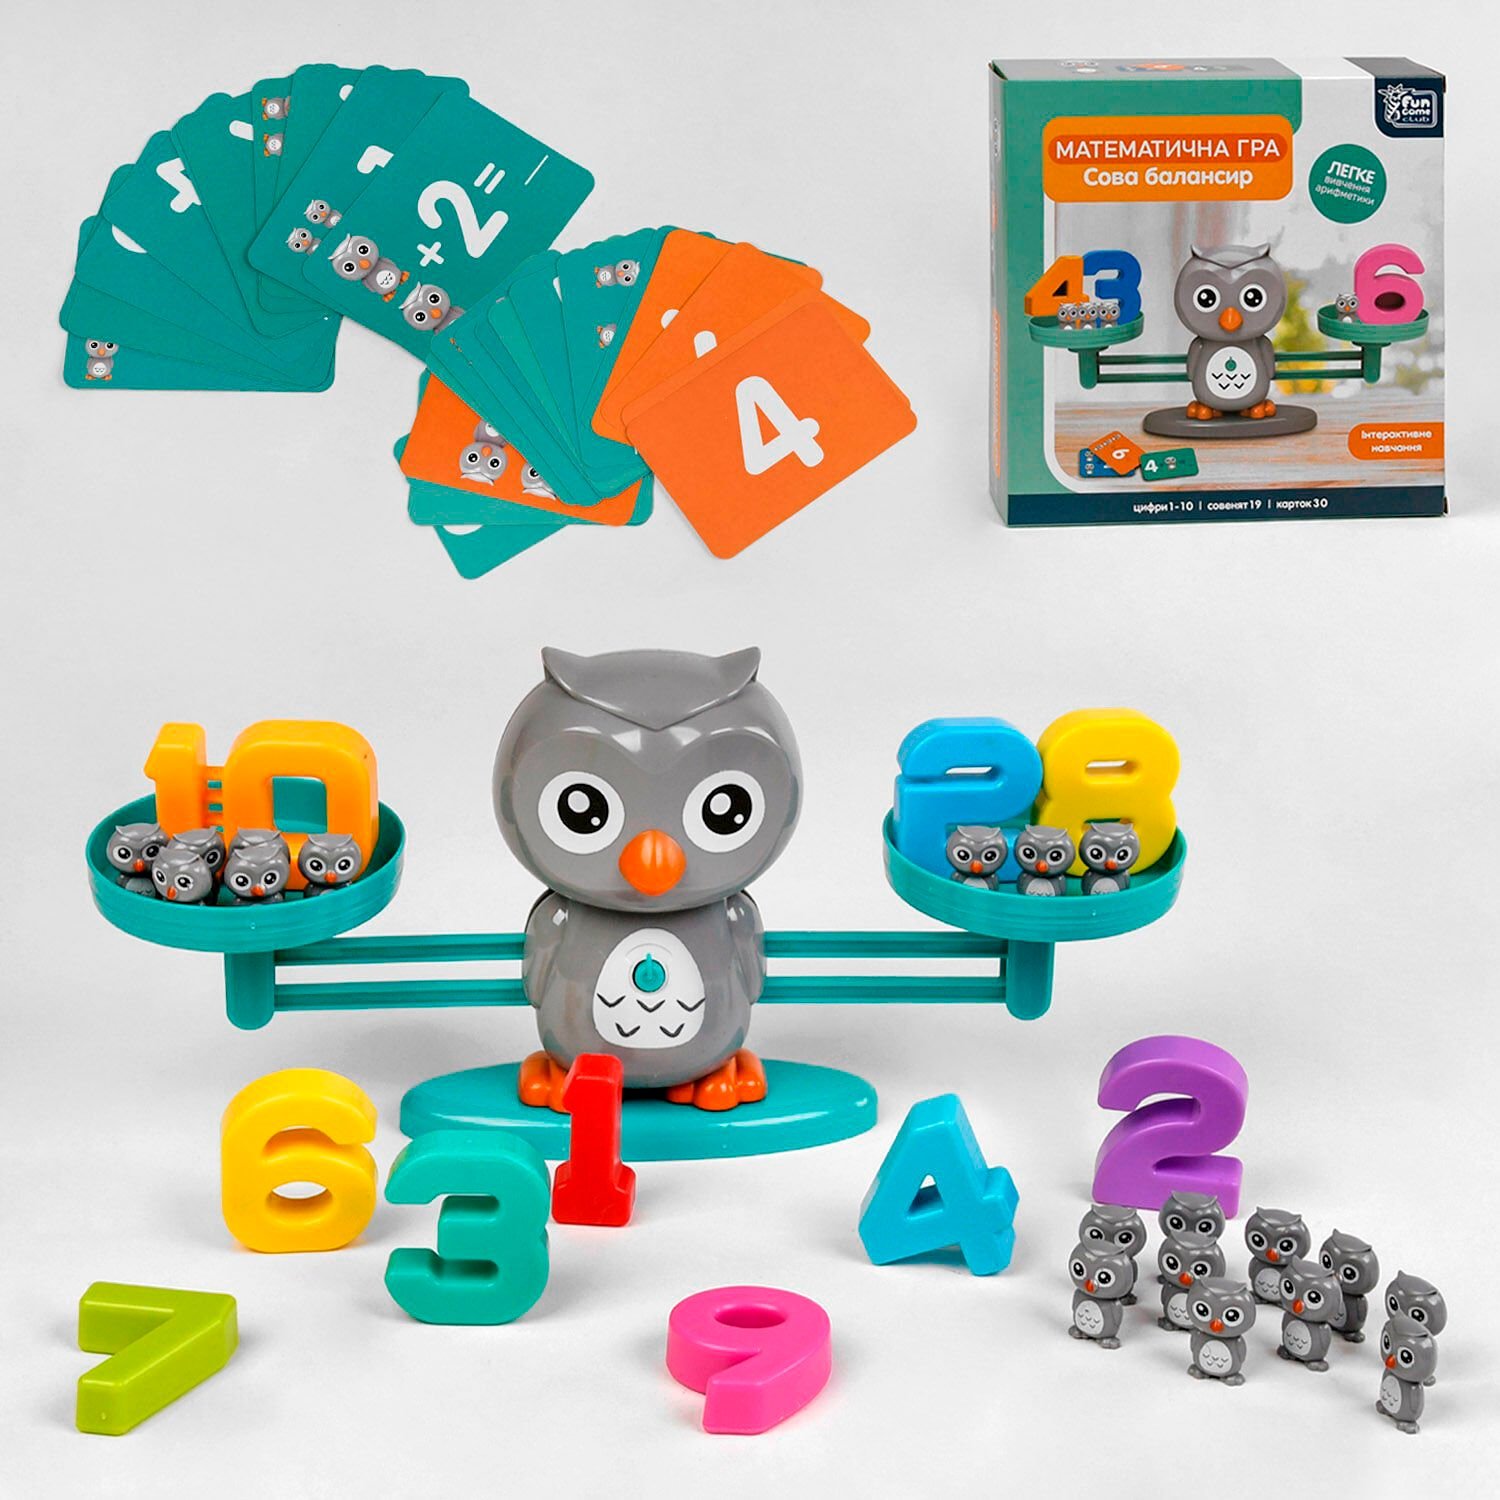 Развивающая детская Игра-балансир Сова (30299) “4FUN Game Club” 53 элемента, 3 уровня игры, 30 карточек, цифры от 1 до 10